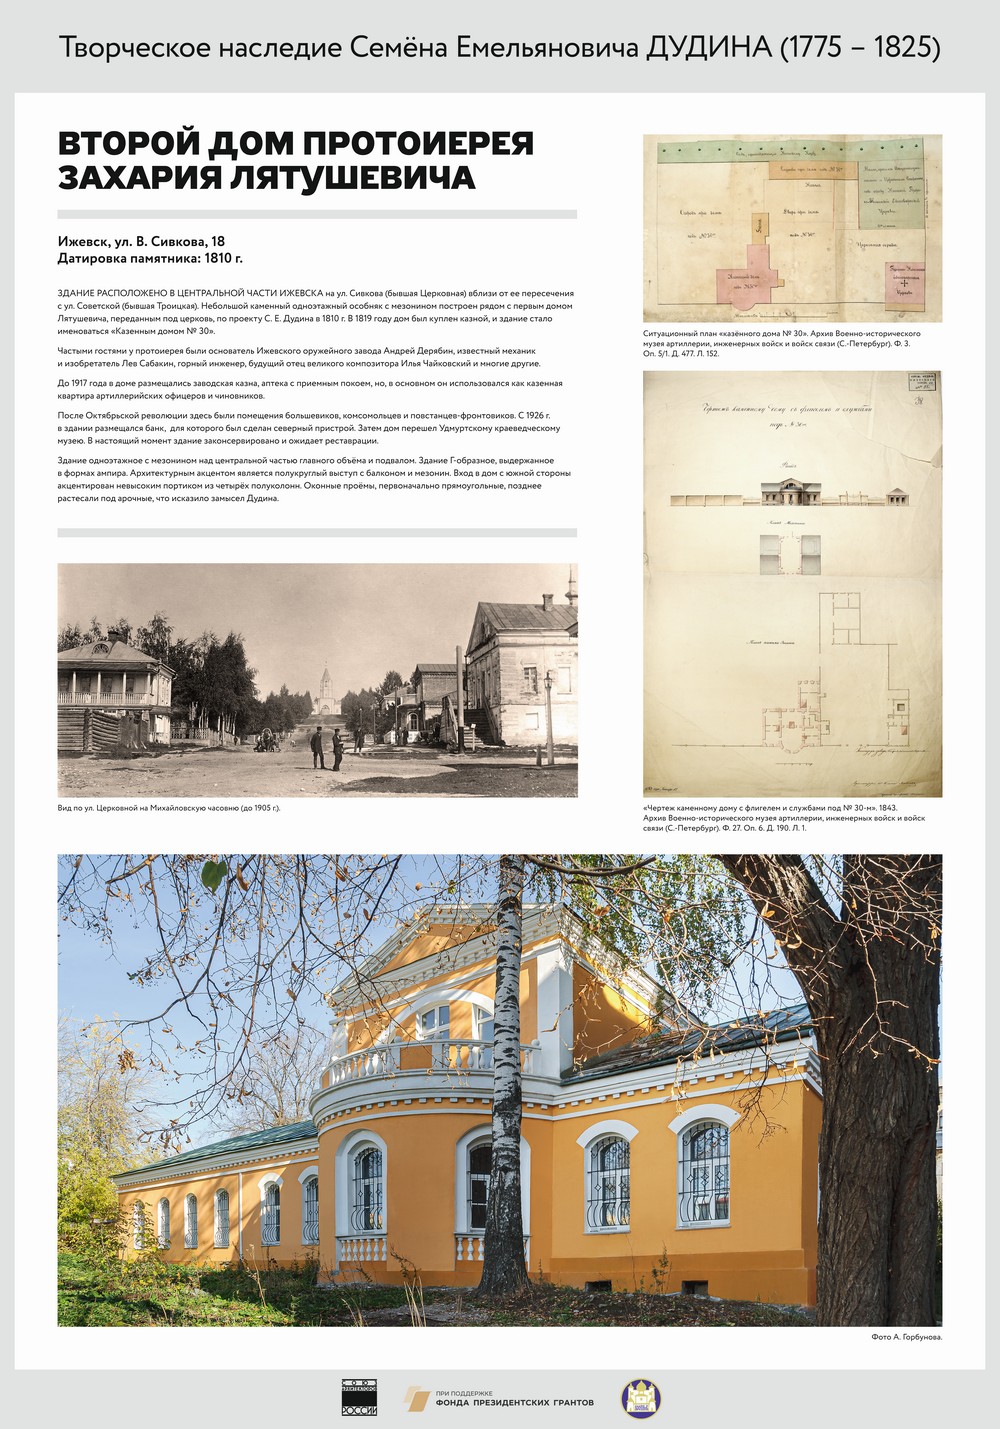 выставка «Наследие Дудина», посвященная 245-летию архитектора Дудина Семена Емельяновича (1775—1825)